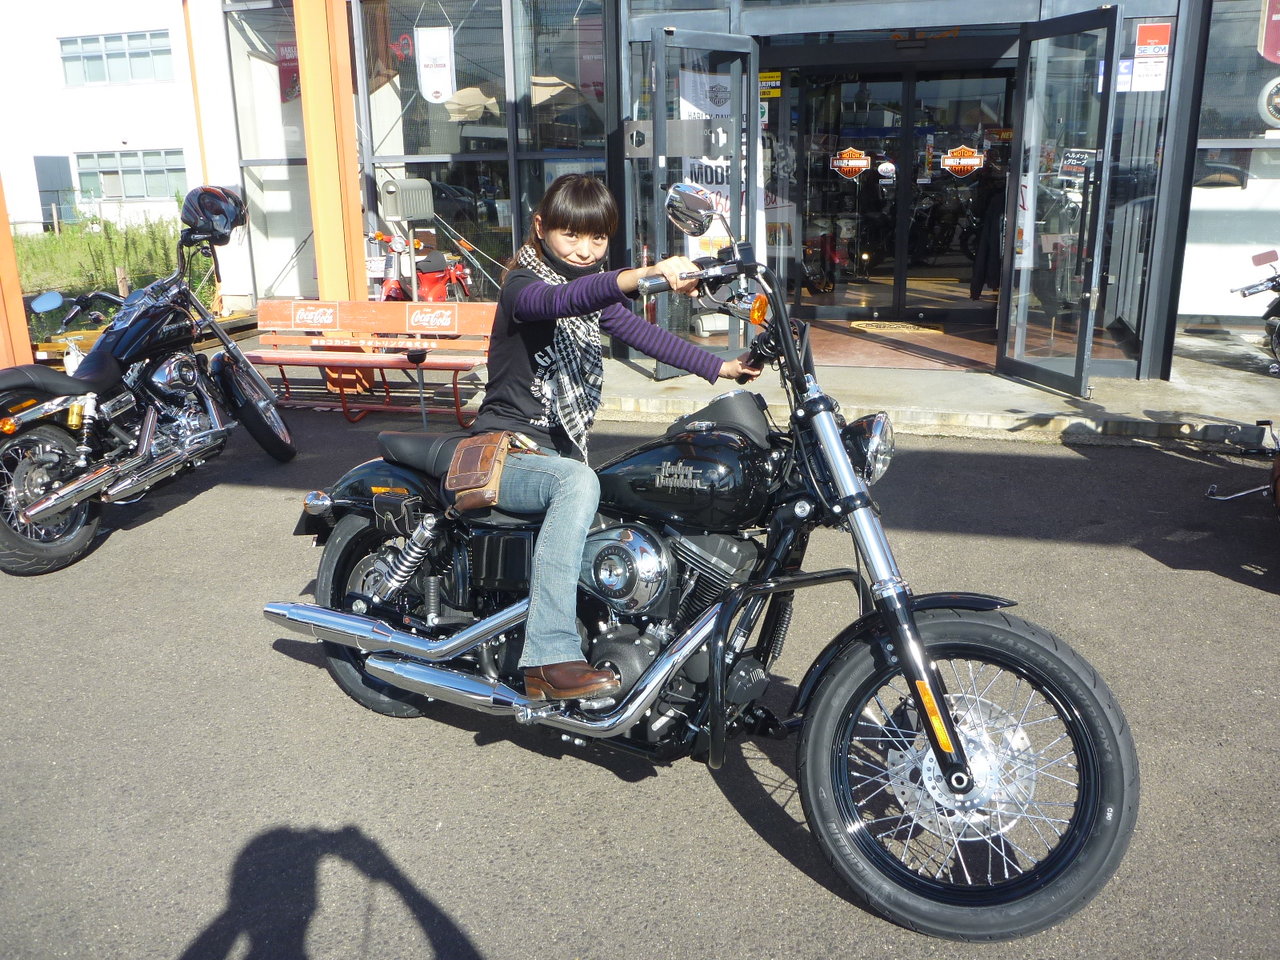 女性ライダーご納車 Harley Davidson Sakurai Blog 旧称 ワークスサクライ